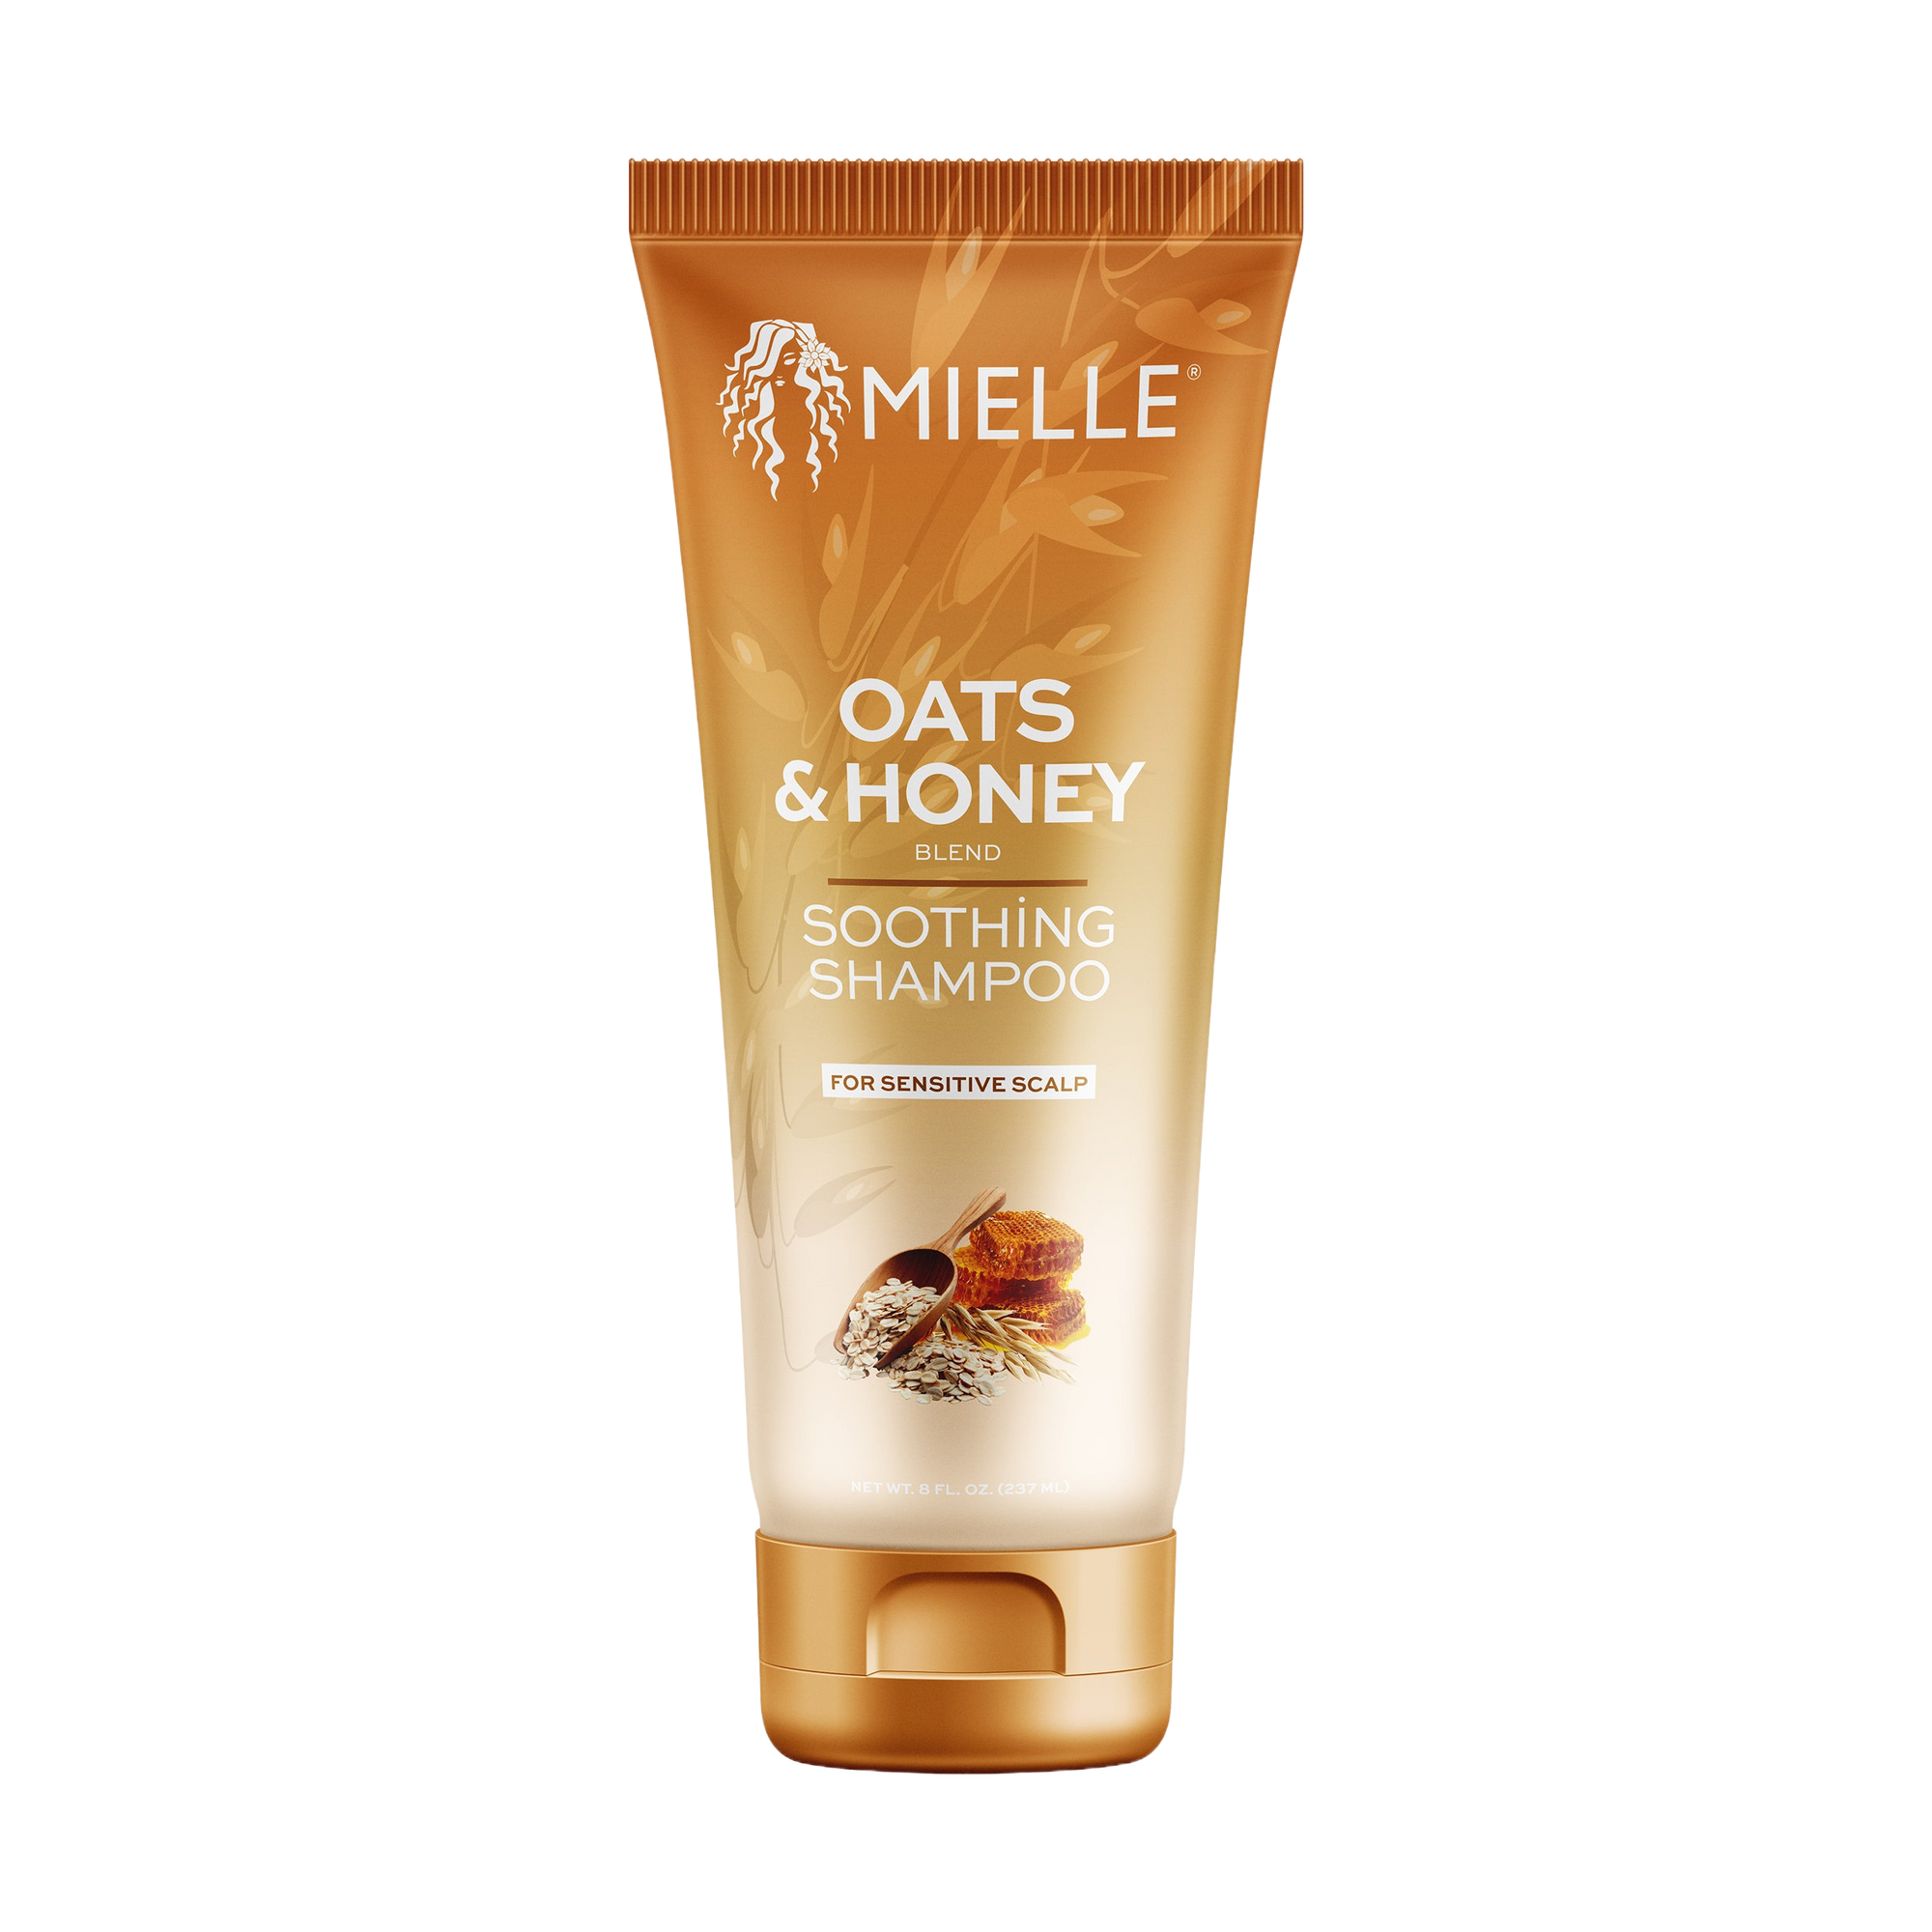 Mielle Organics Oats & Honey Soothing Shampoo 8.5oz